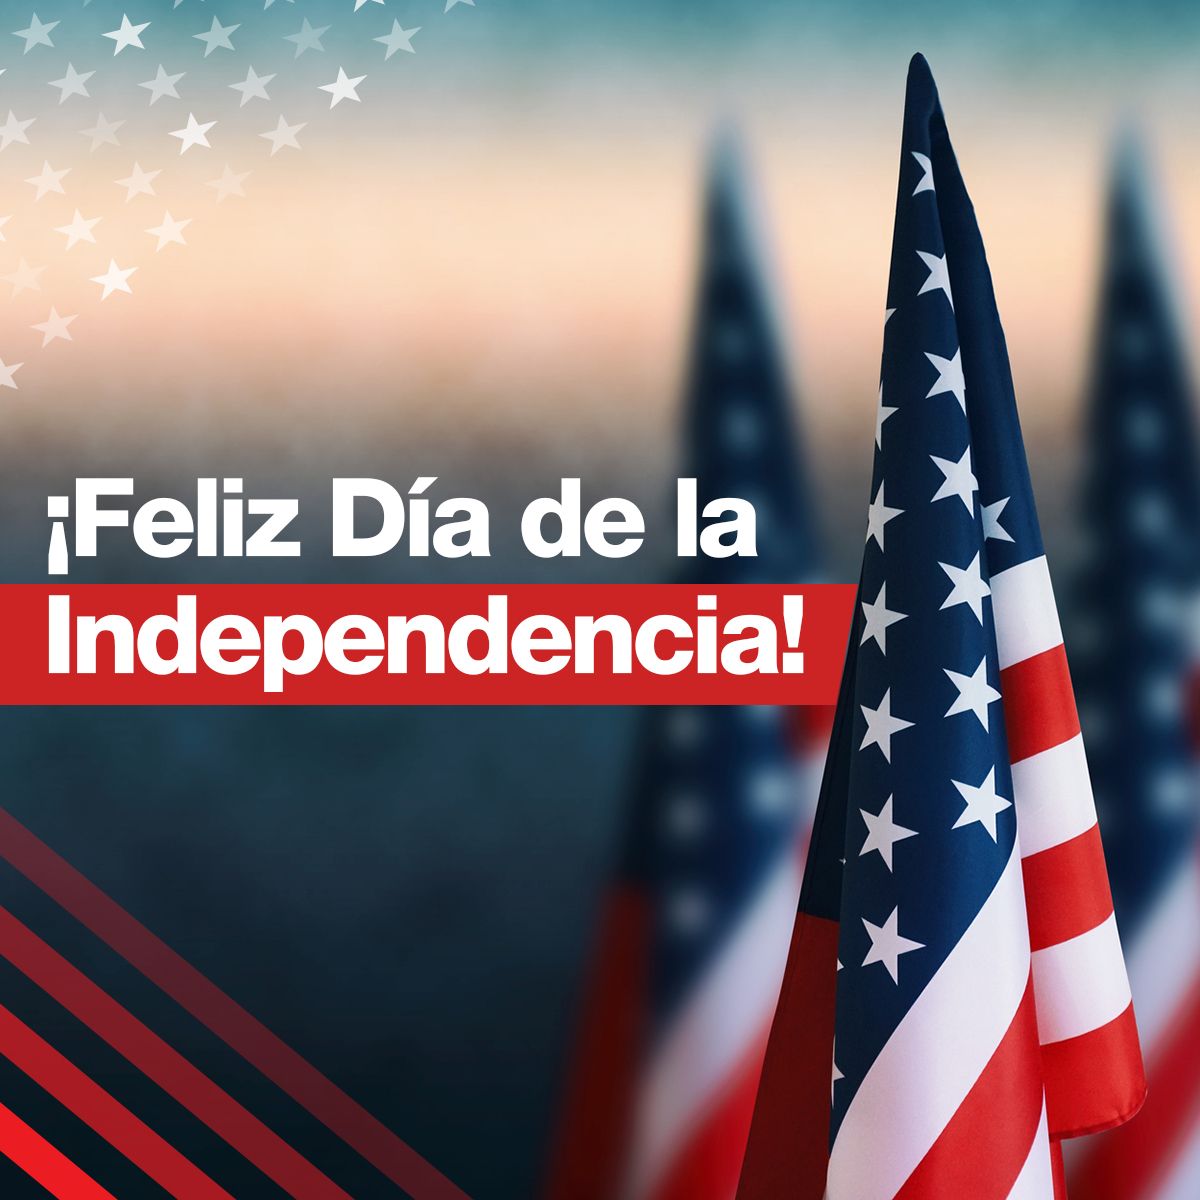 ¡Feliz Día de la Independencia!